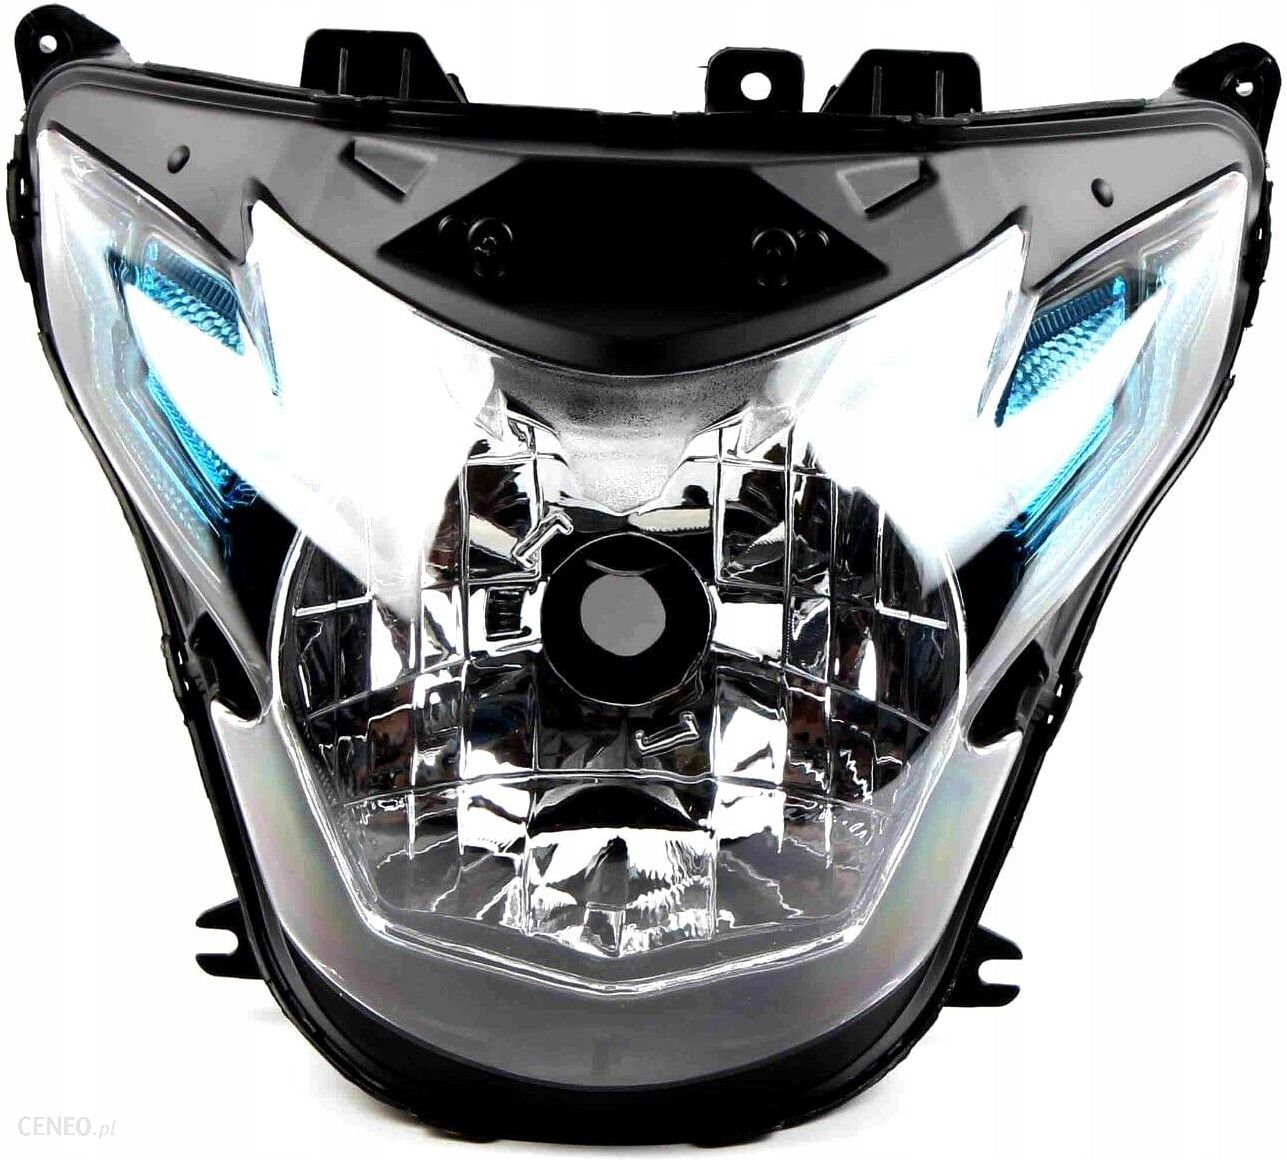 Części motocyklowe Lampa Przednia Suzuki Gsr 750 Opinie